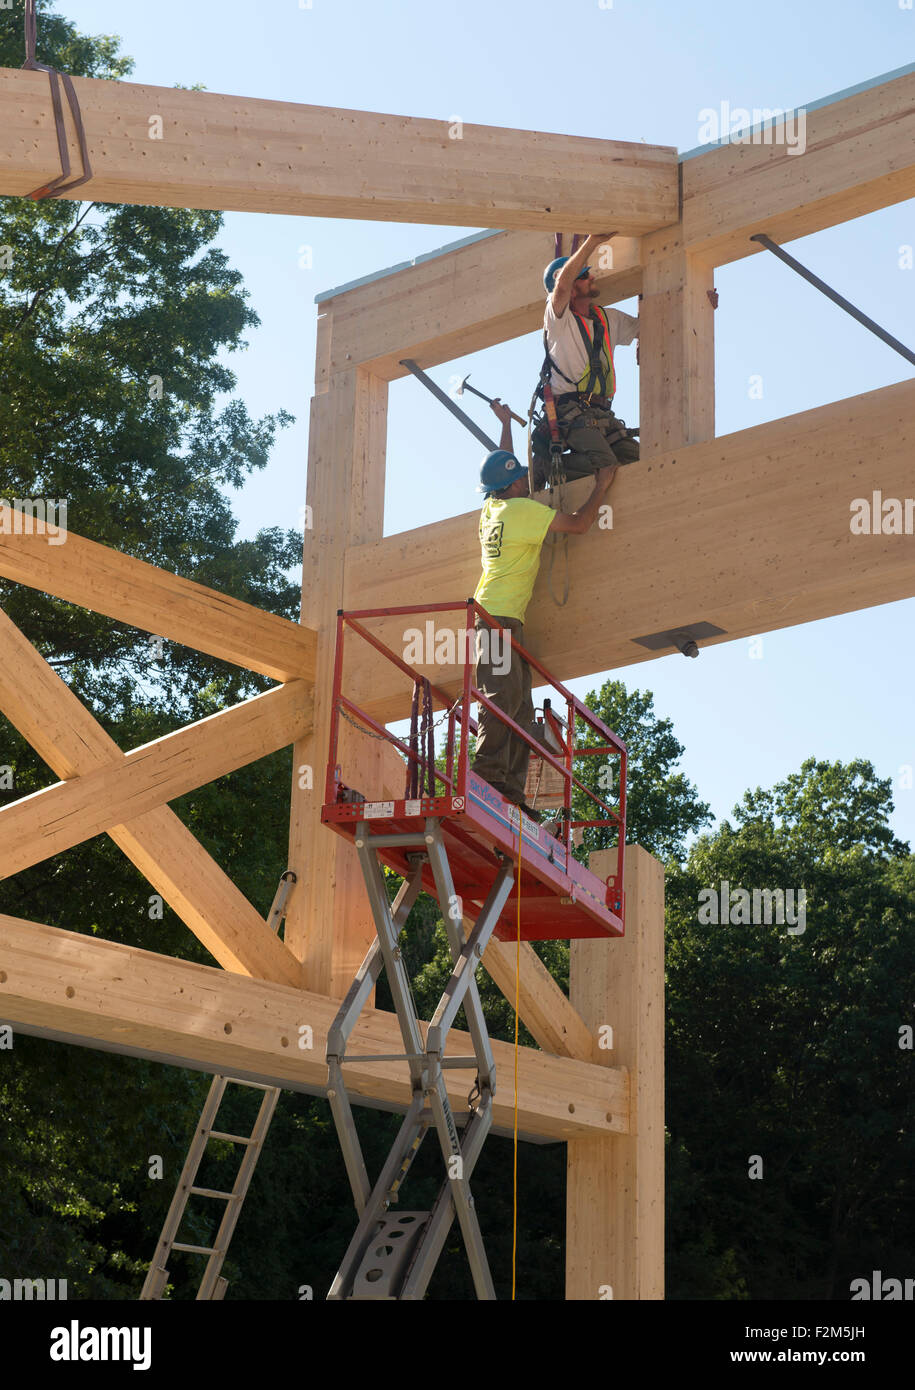 16.000 pound ingegnerizzati in legno travature in legno attendono l'installazione di gru per il Leed Platinum il terreno comune ad alto edificio scolastico. Foto Stock